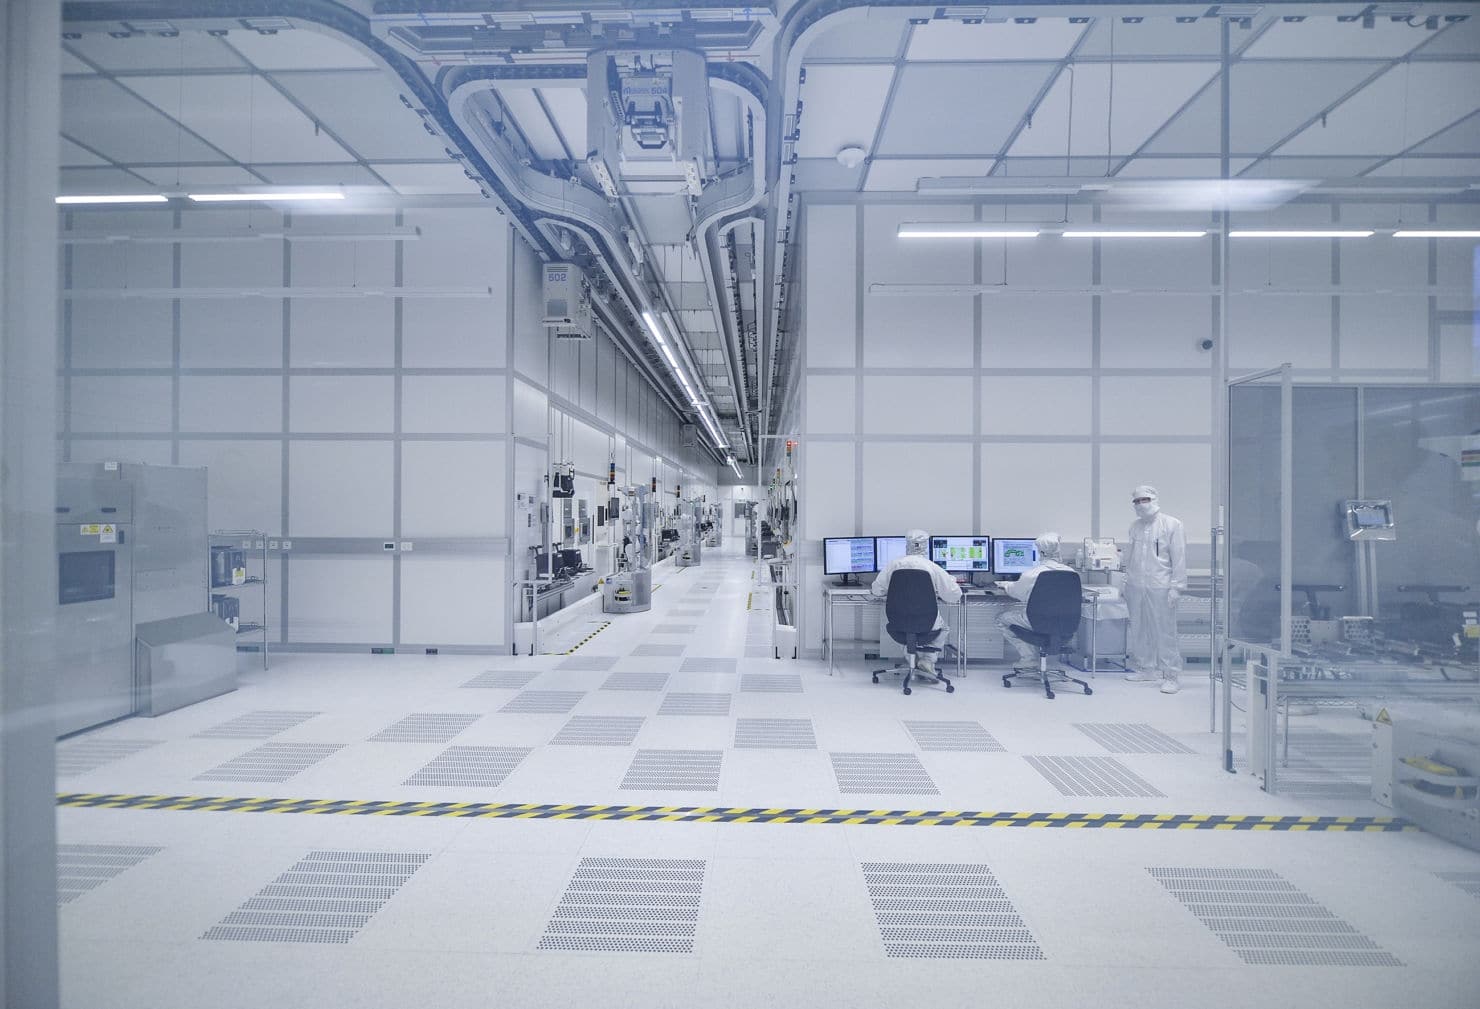 Ausbaupläne von Infineon mit der Rekordinvestition von 1,6 Milliarden 
am Standort Villach